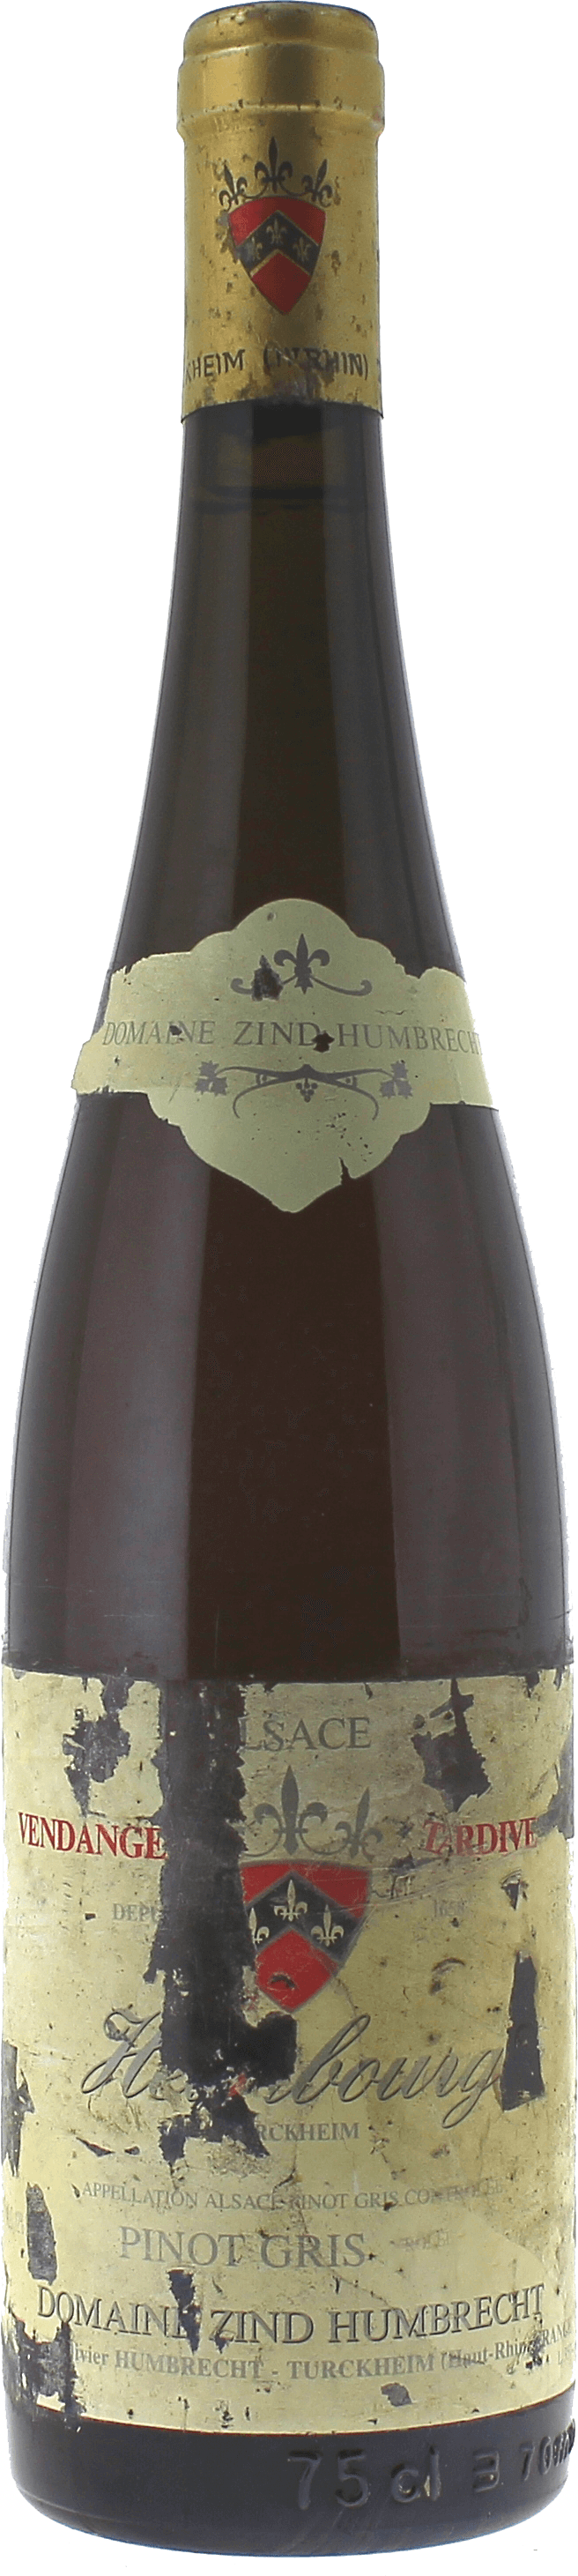 Pinot-gris heimbourg vendange tardive zind-humbrecht 1996  Zind Humbrecht, ALSACE